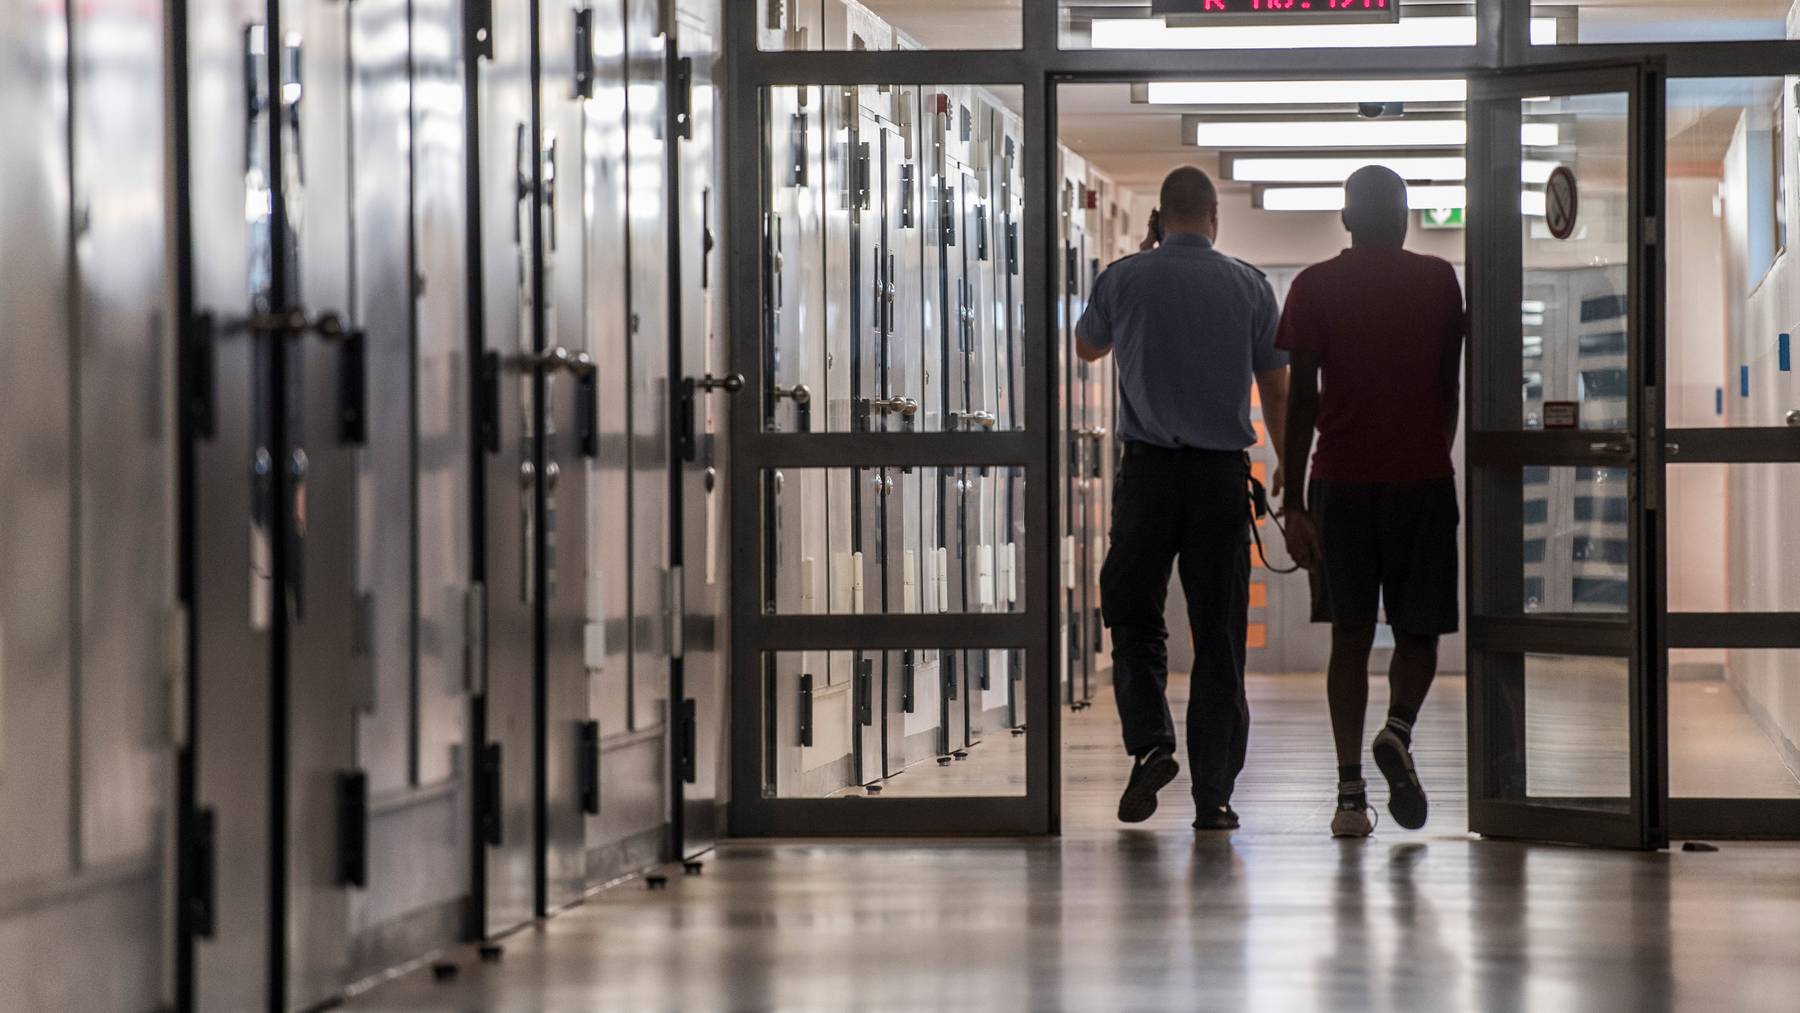 17 Prozent der Personen, die 2014 zu einer Strafe verurteilt wurden, landeten innert dreier Jahre erneut im Gefängnis.